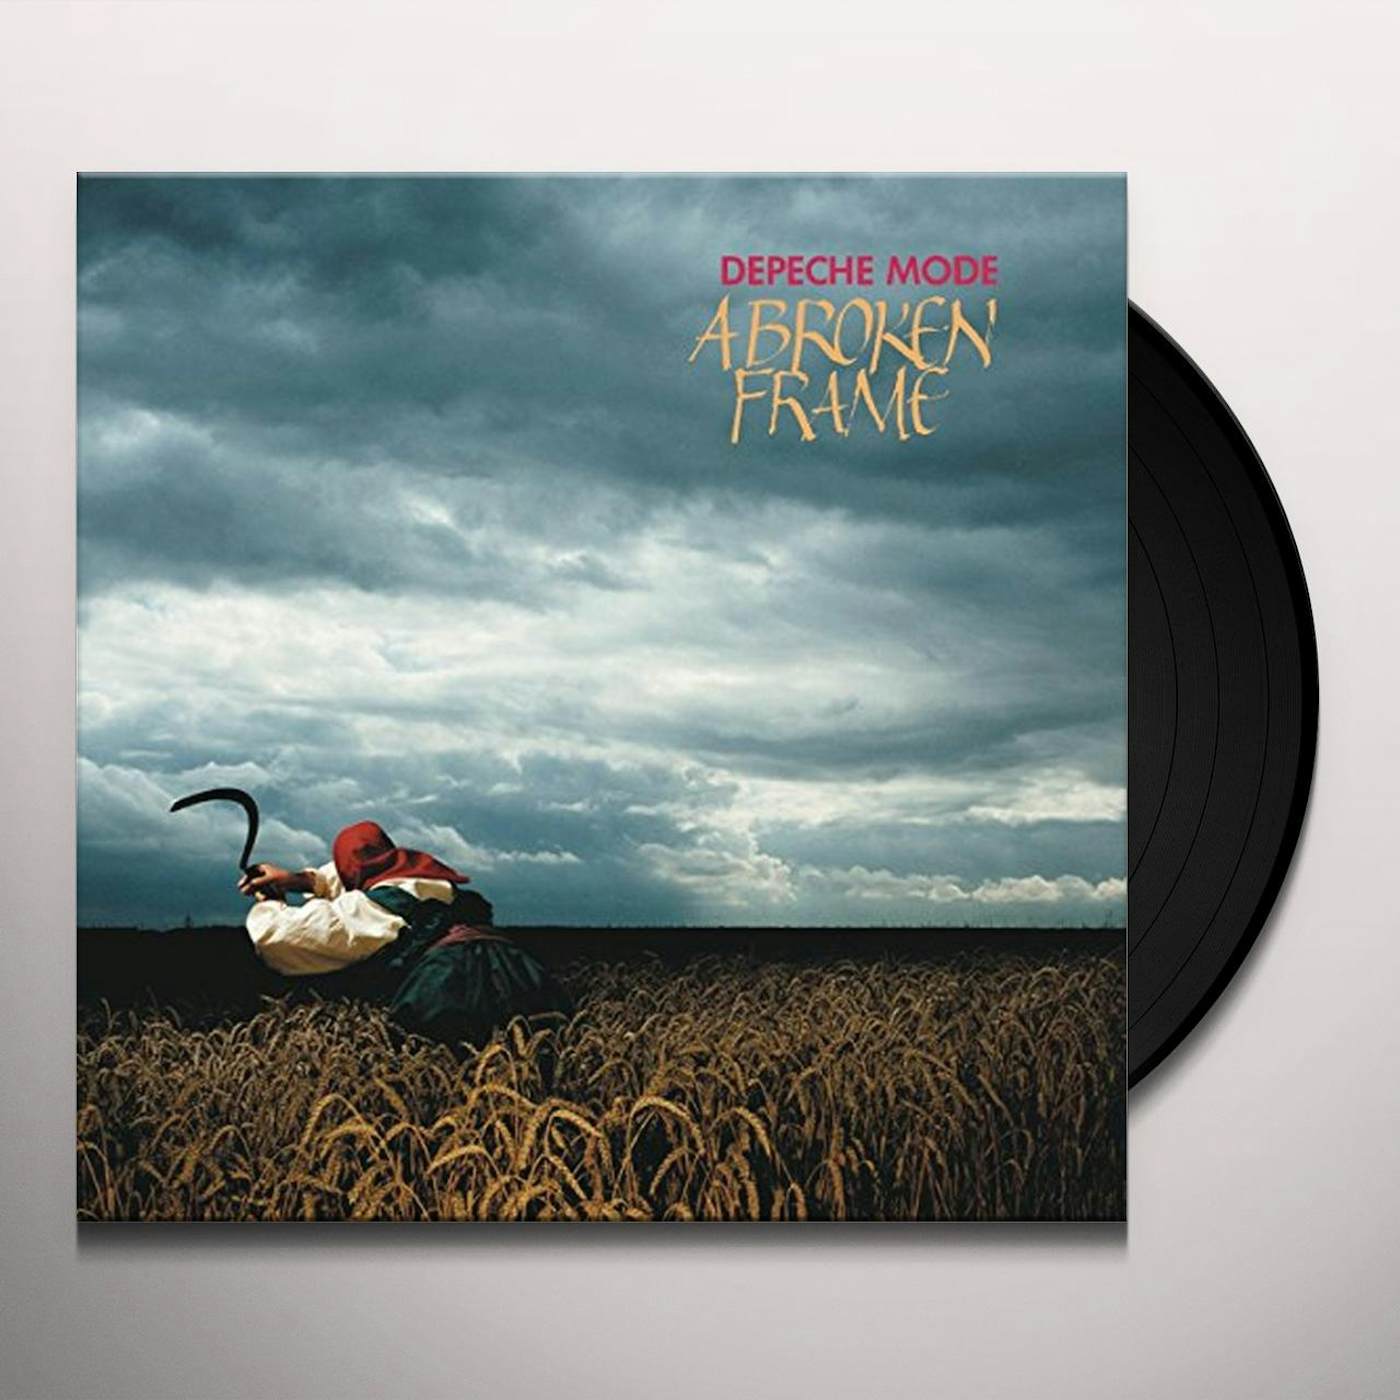 Depeche Mode BROKEN FRAME (180G/GATEFOLD) Vinyl Record